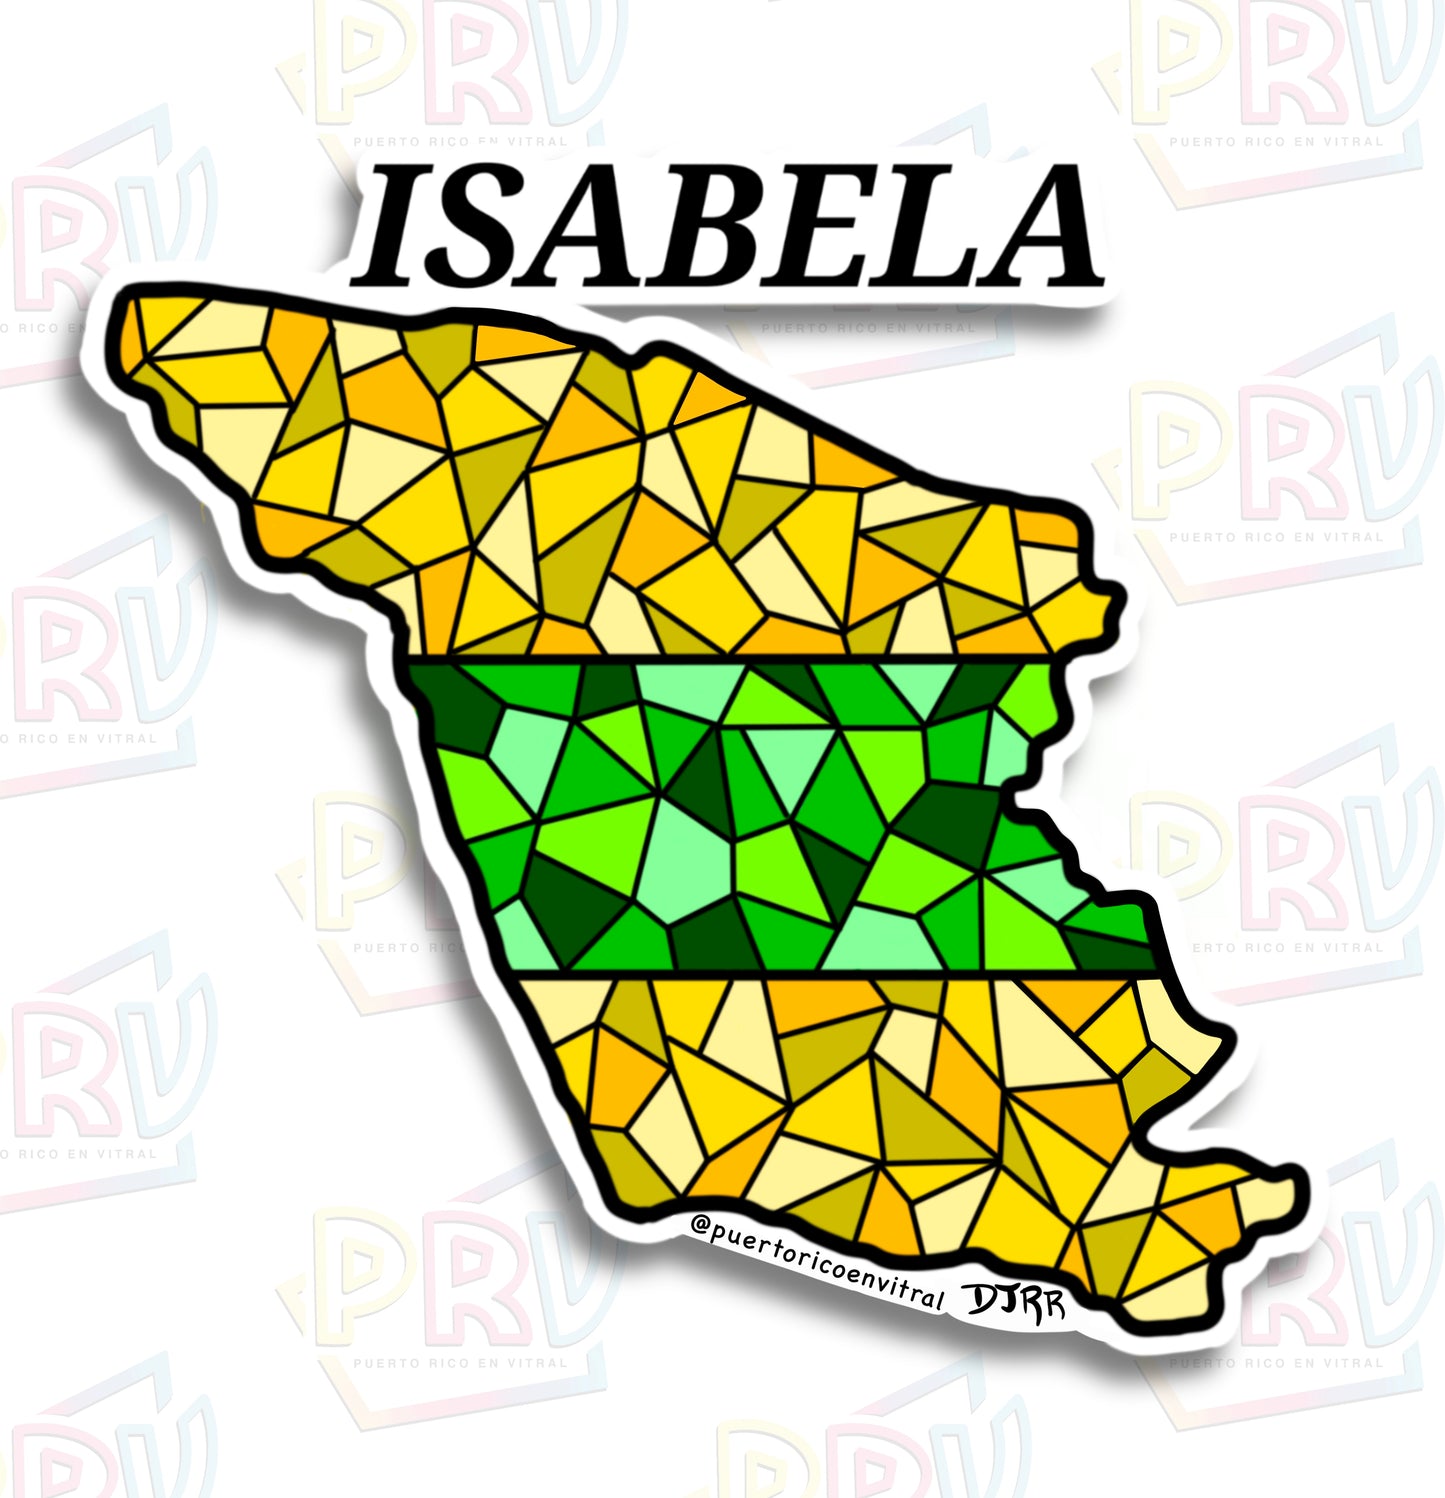 Isabela PR (Sticker)